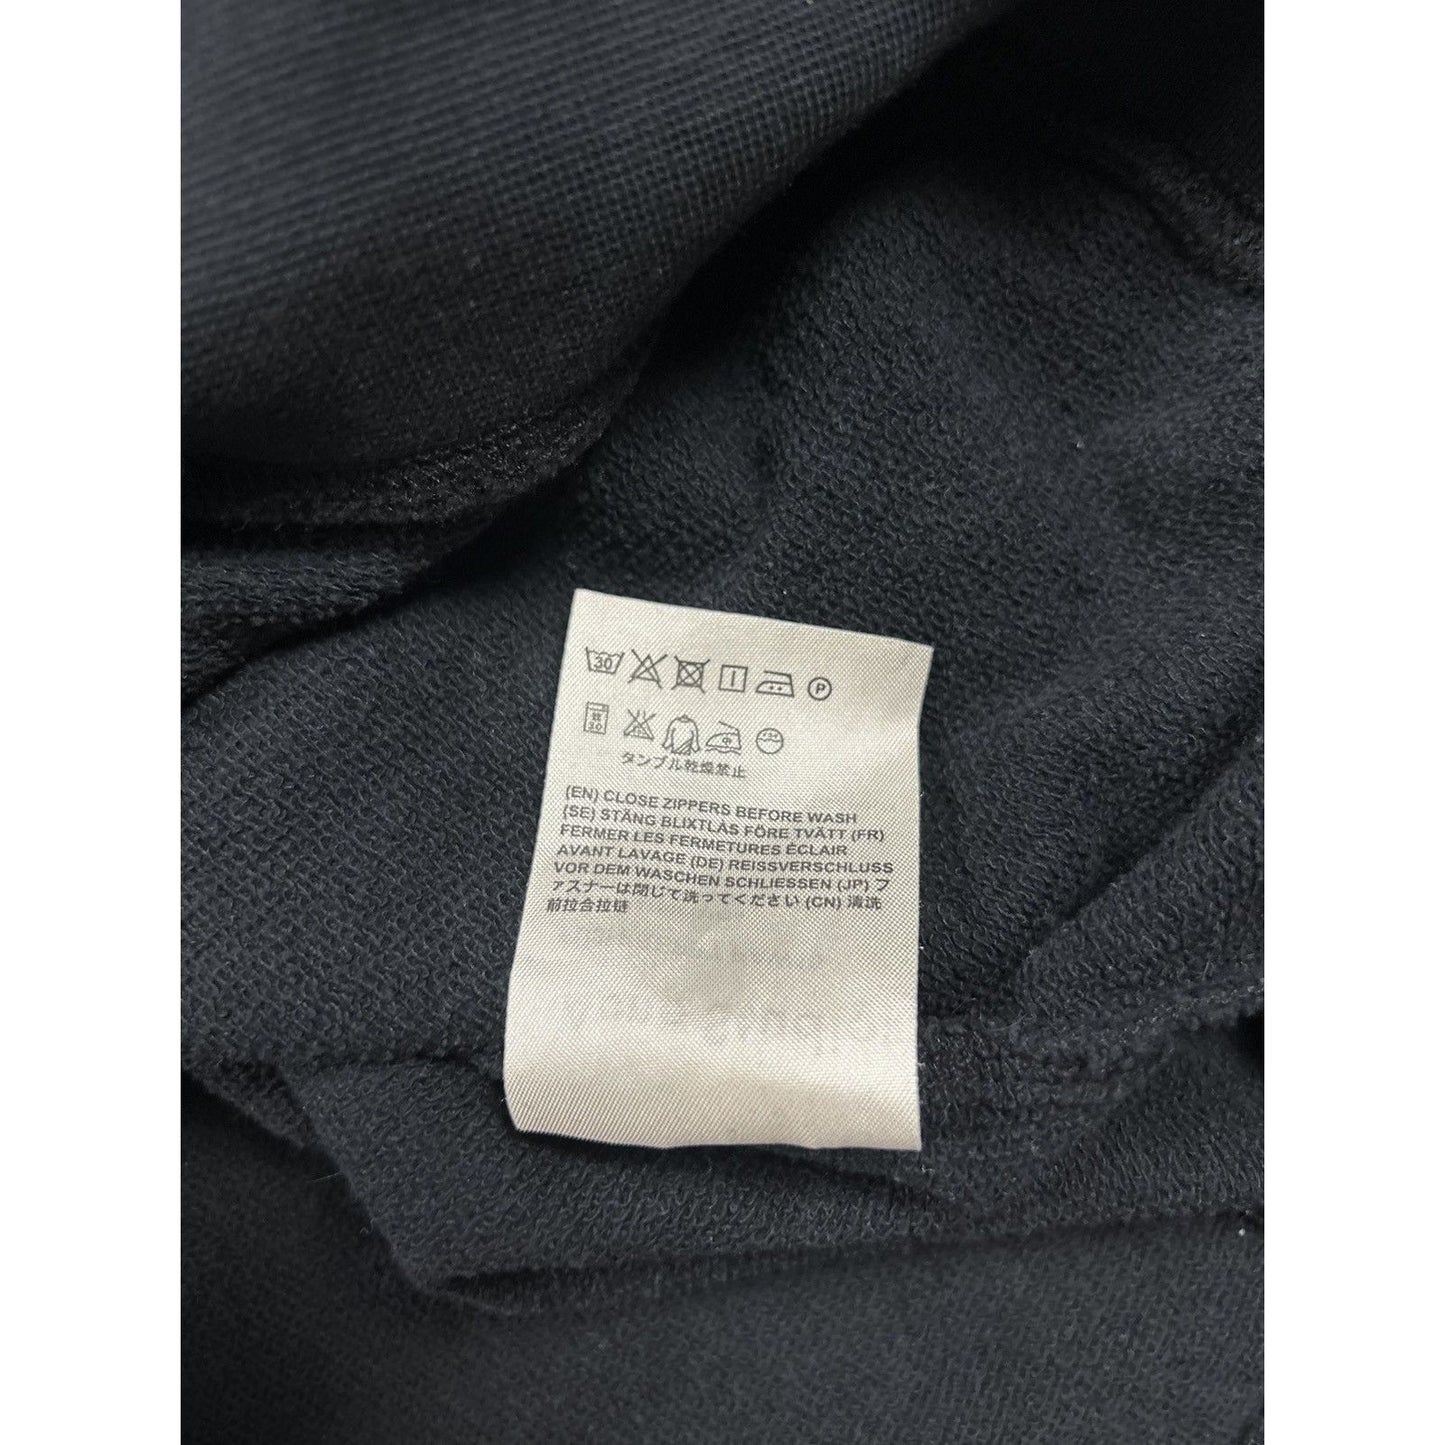 Acne Studios black sweatshirt Fuji preppy paw15 halfzip